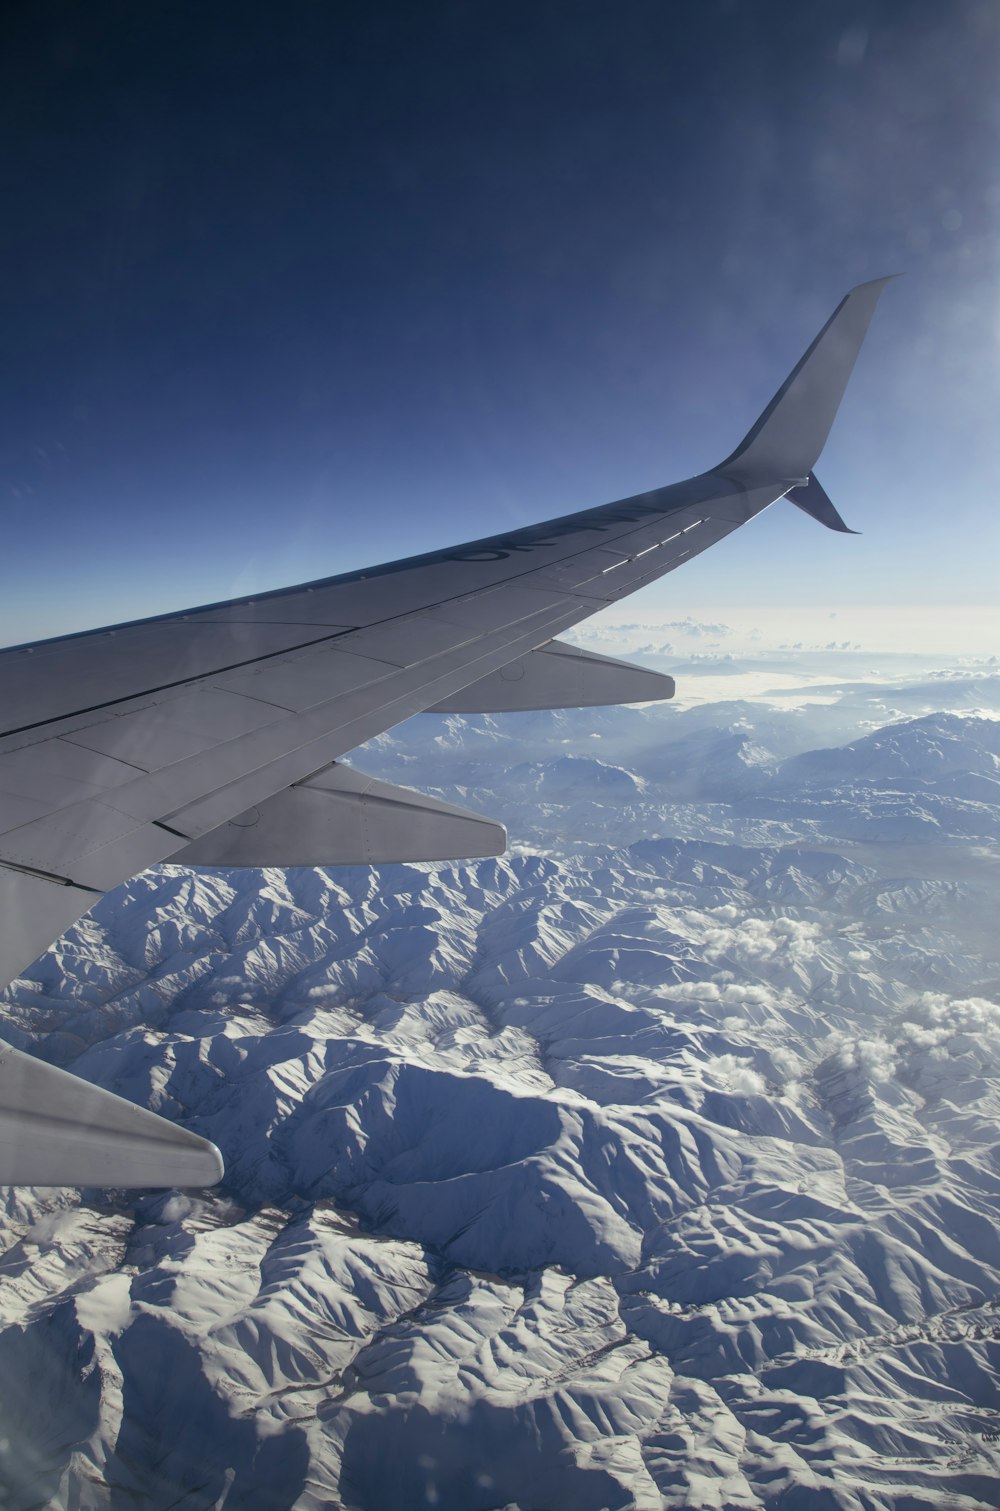 Ala de avión blanca y negra sobre montañas blancas y azules durante el día